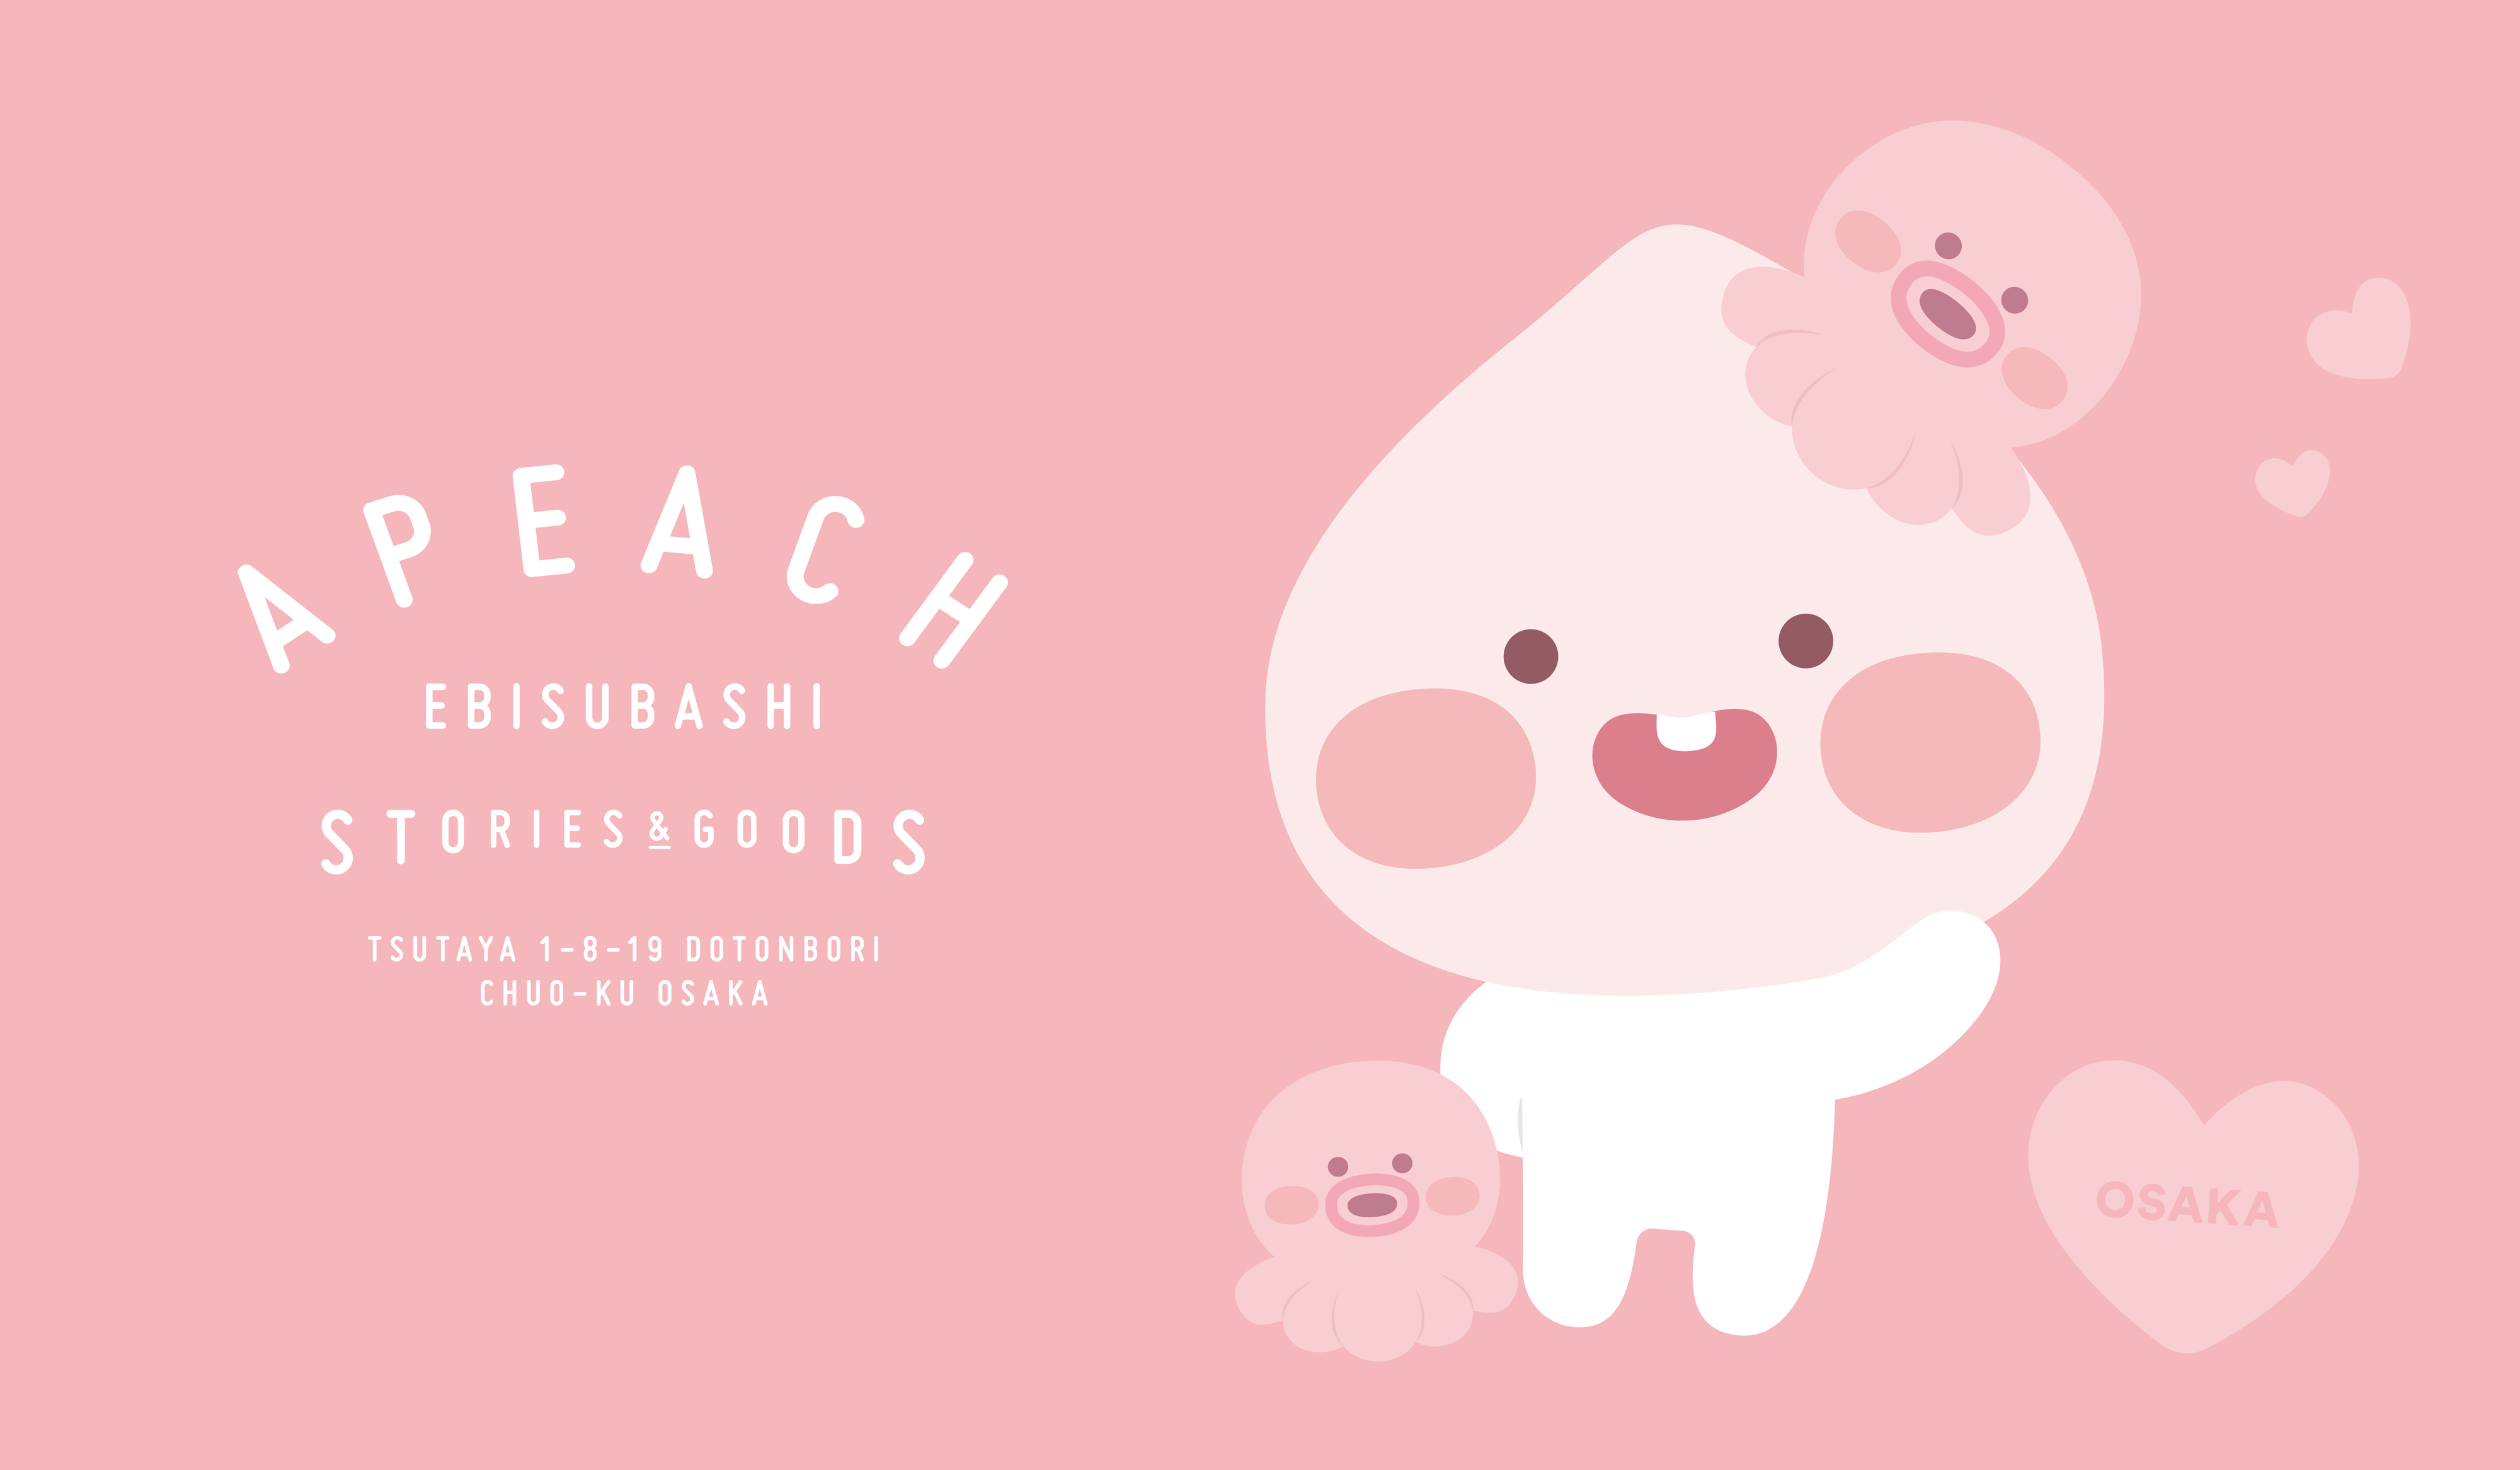 Tsutaya Ebisubashi内にて 大阪初出店のapeach Ebisubashiが6月29日からグランドオープンいたします 株式会社カカオアイエックスジャパンのプレスリリース